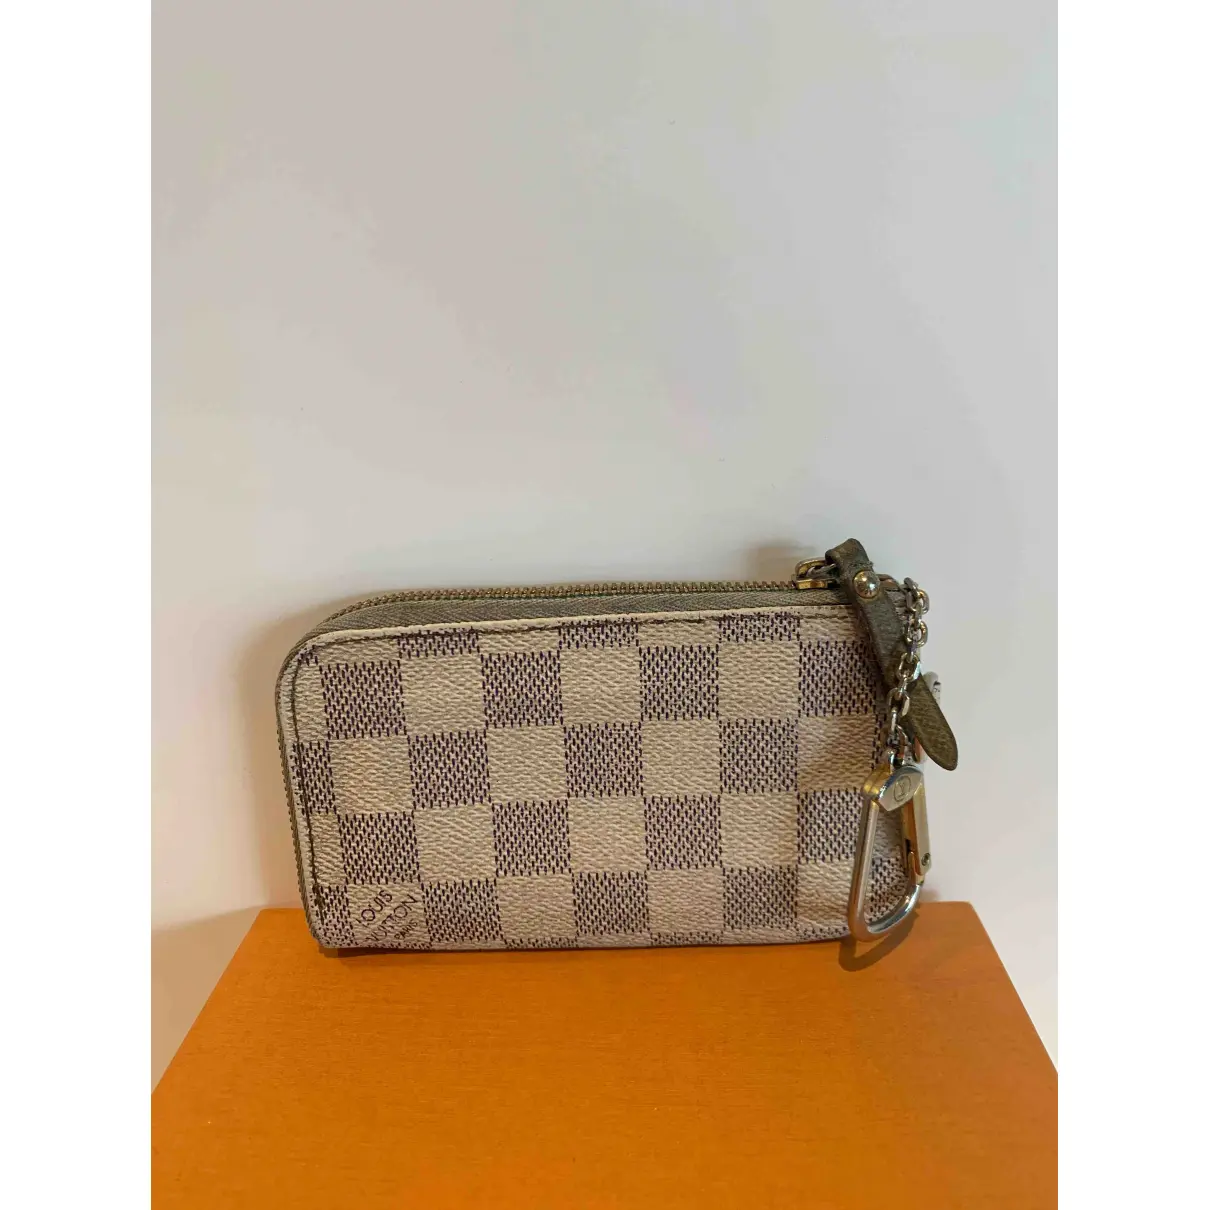 Buy Louis Vuitton Zippy cloth purse online